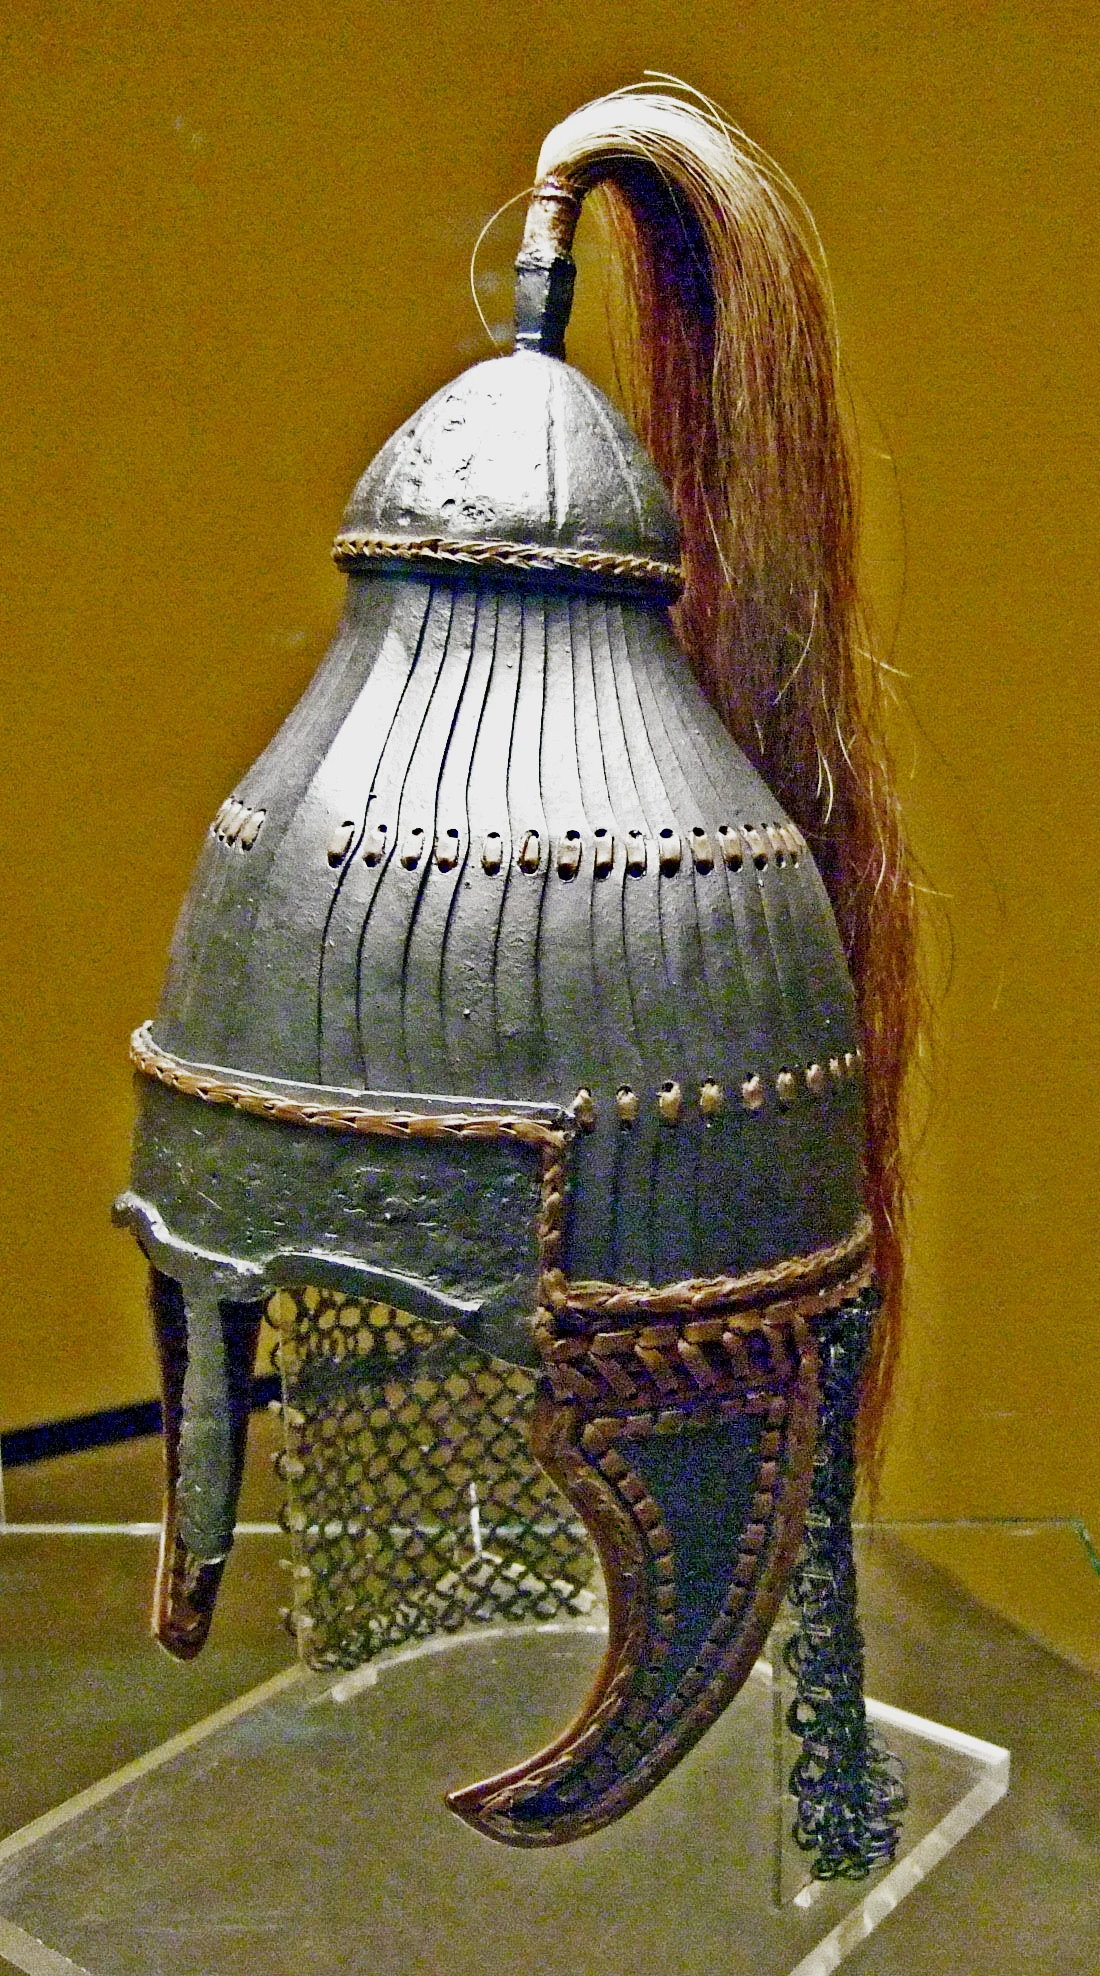 发现于德国巴登·符腾堡州的扎盔重建，这被认为是阿瓦尔人的头盔